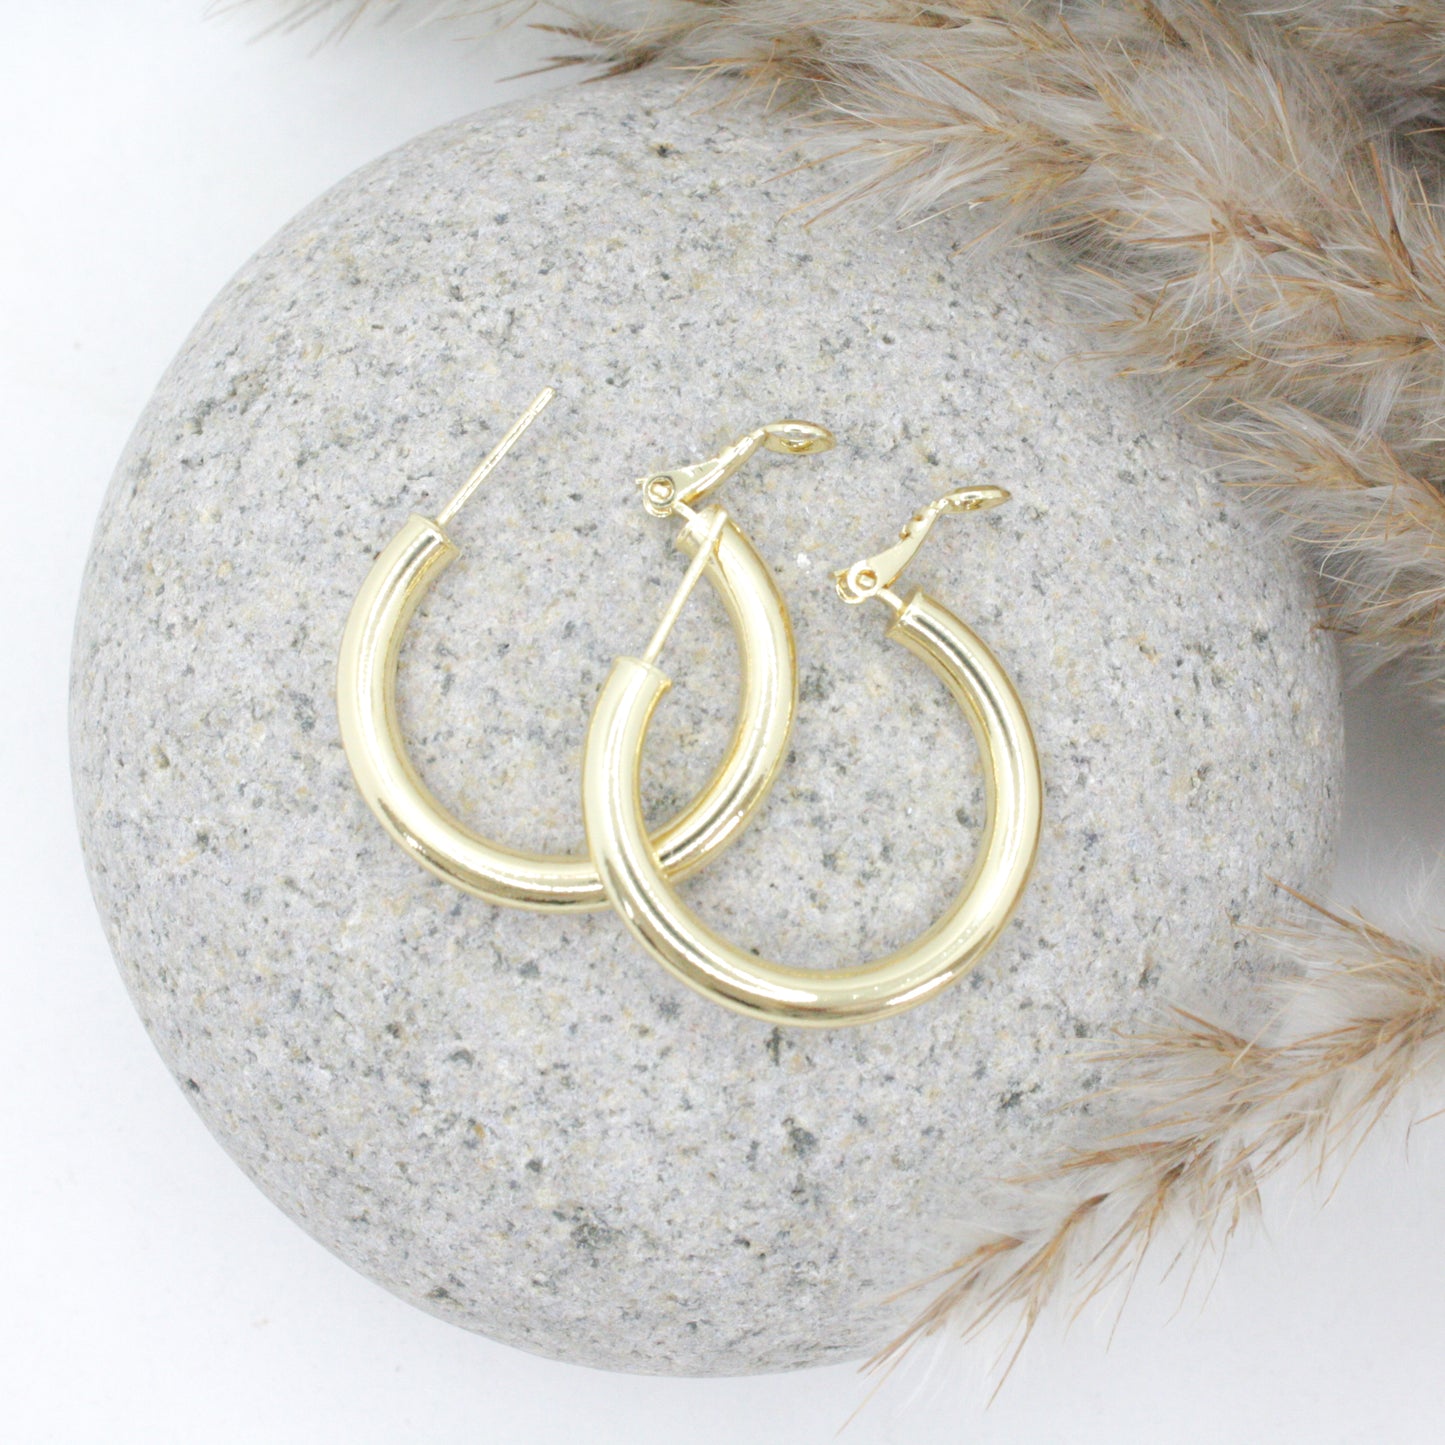 Bantam Hoop Earrings :: 14k Gold Filled